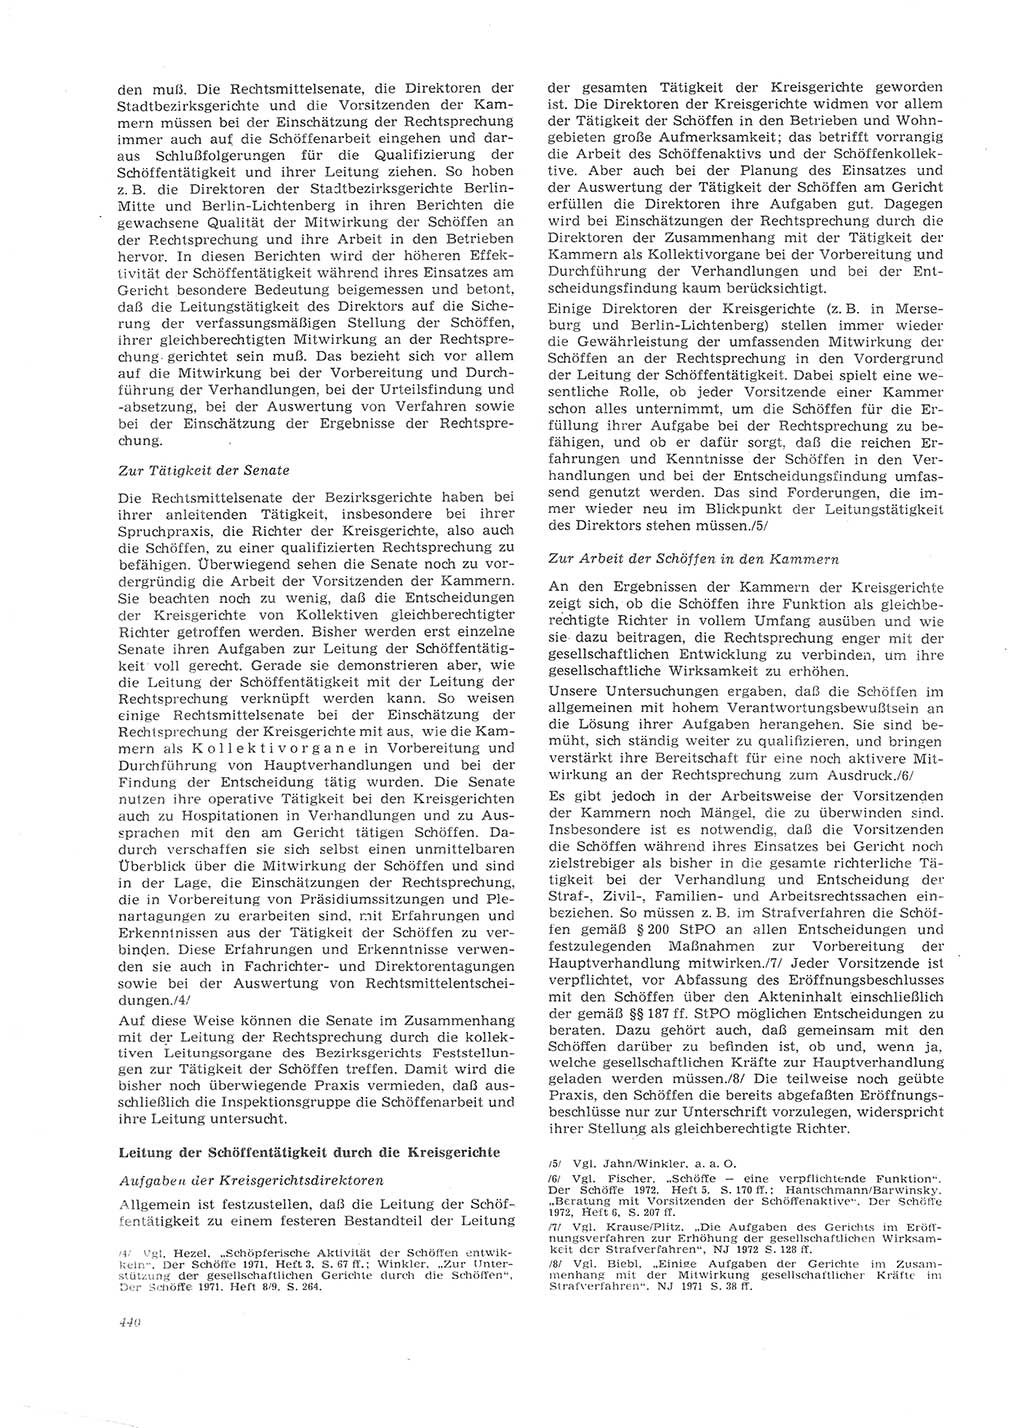 Neue Justiz (NJ), Zeitschrift für Recht und Rechtswissenschaft [Deutsche Demokratische Republik (DDR)], 26. Jahrgang 1972, Seite 440 (NJ DDR 1972, S. 440)